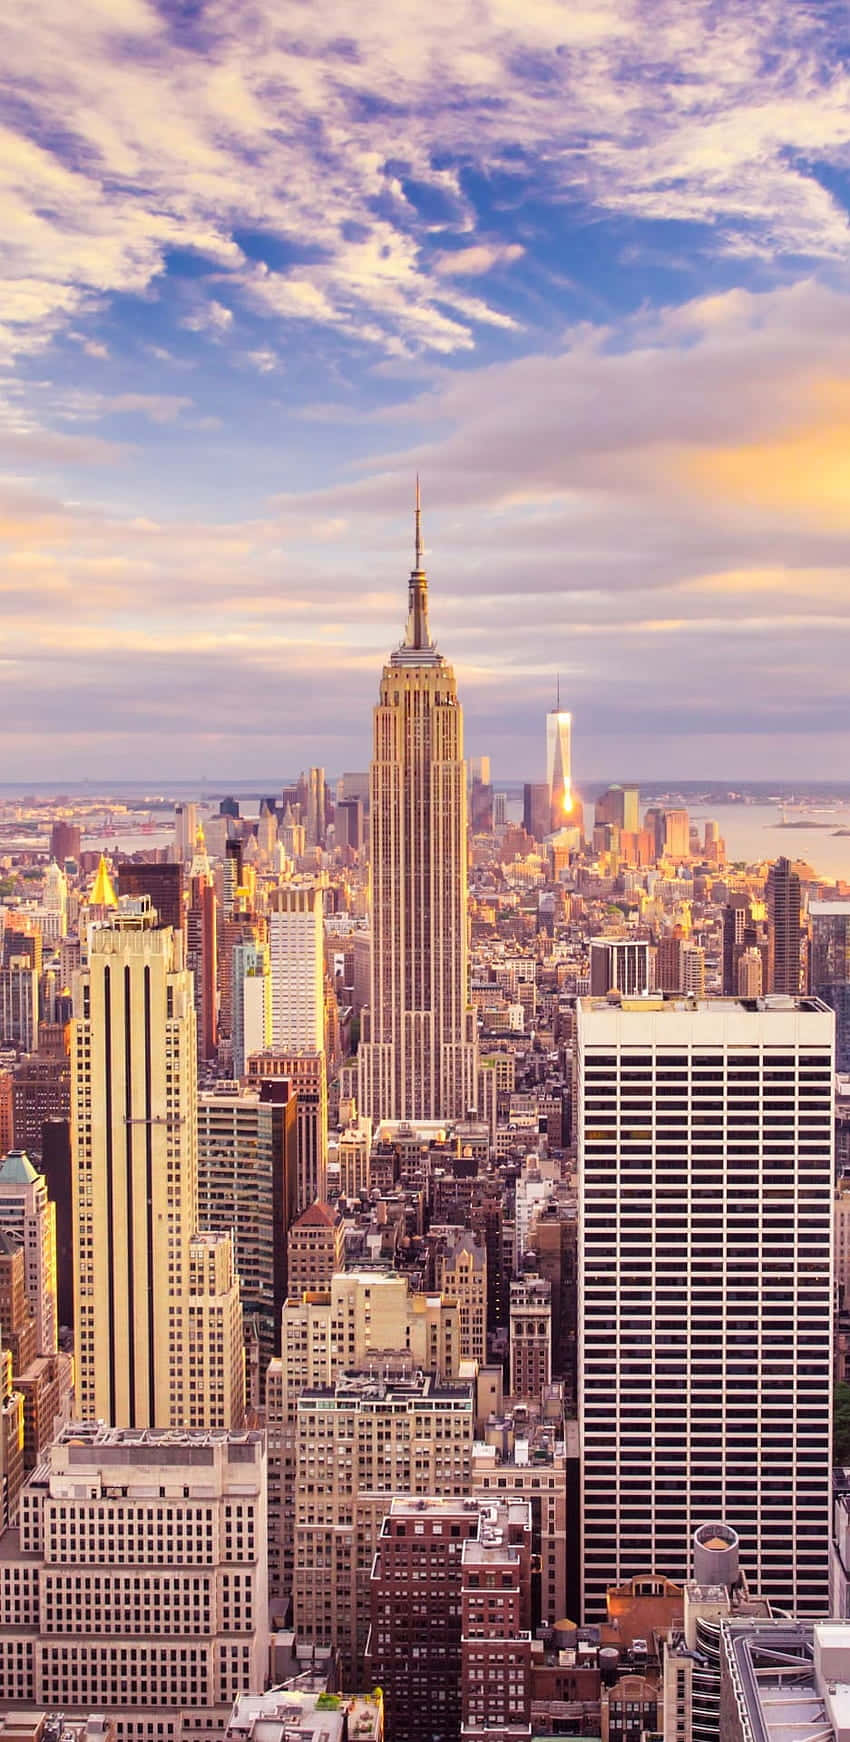 Fondalecon L'empire State Building E Grattacieli: La Miglior Immagine Di New York